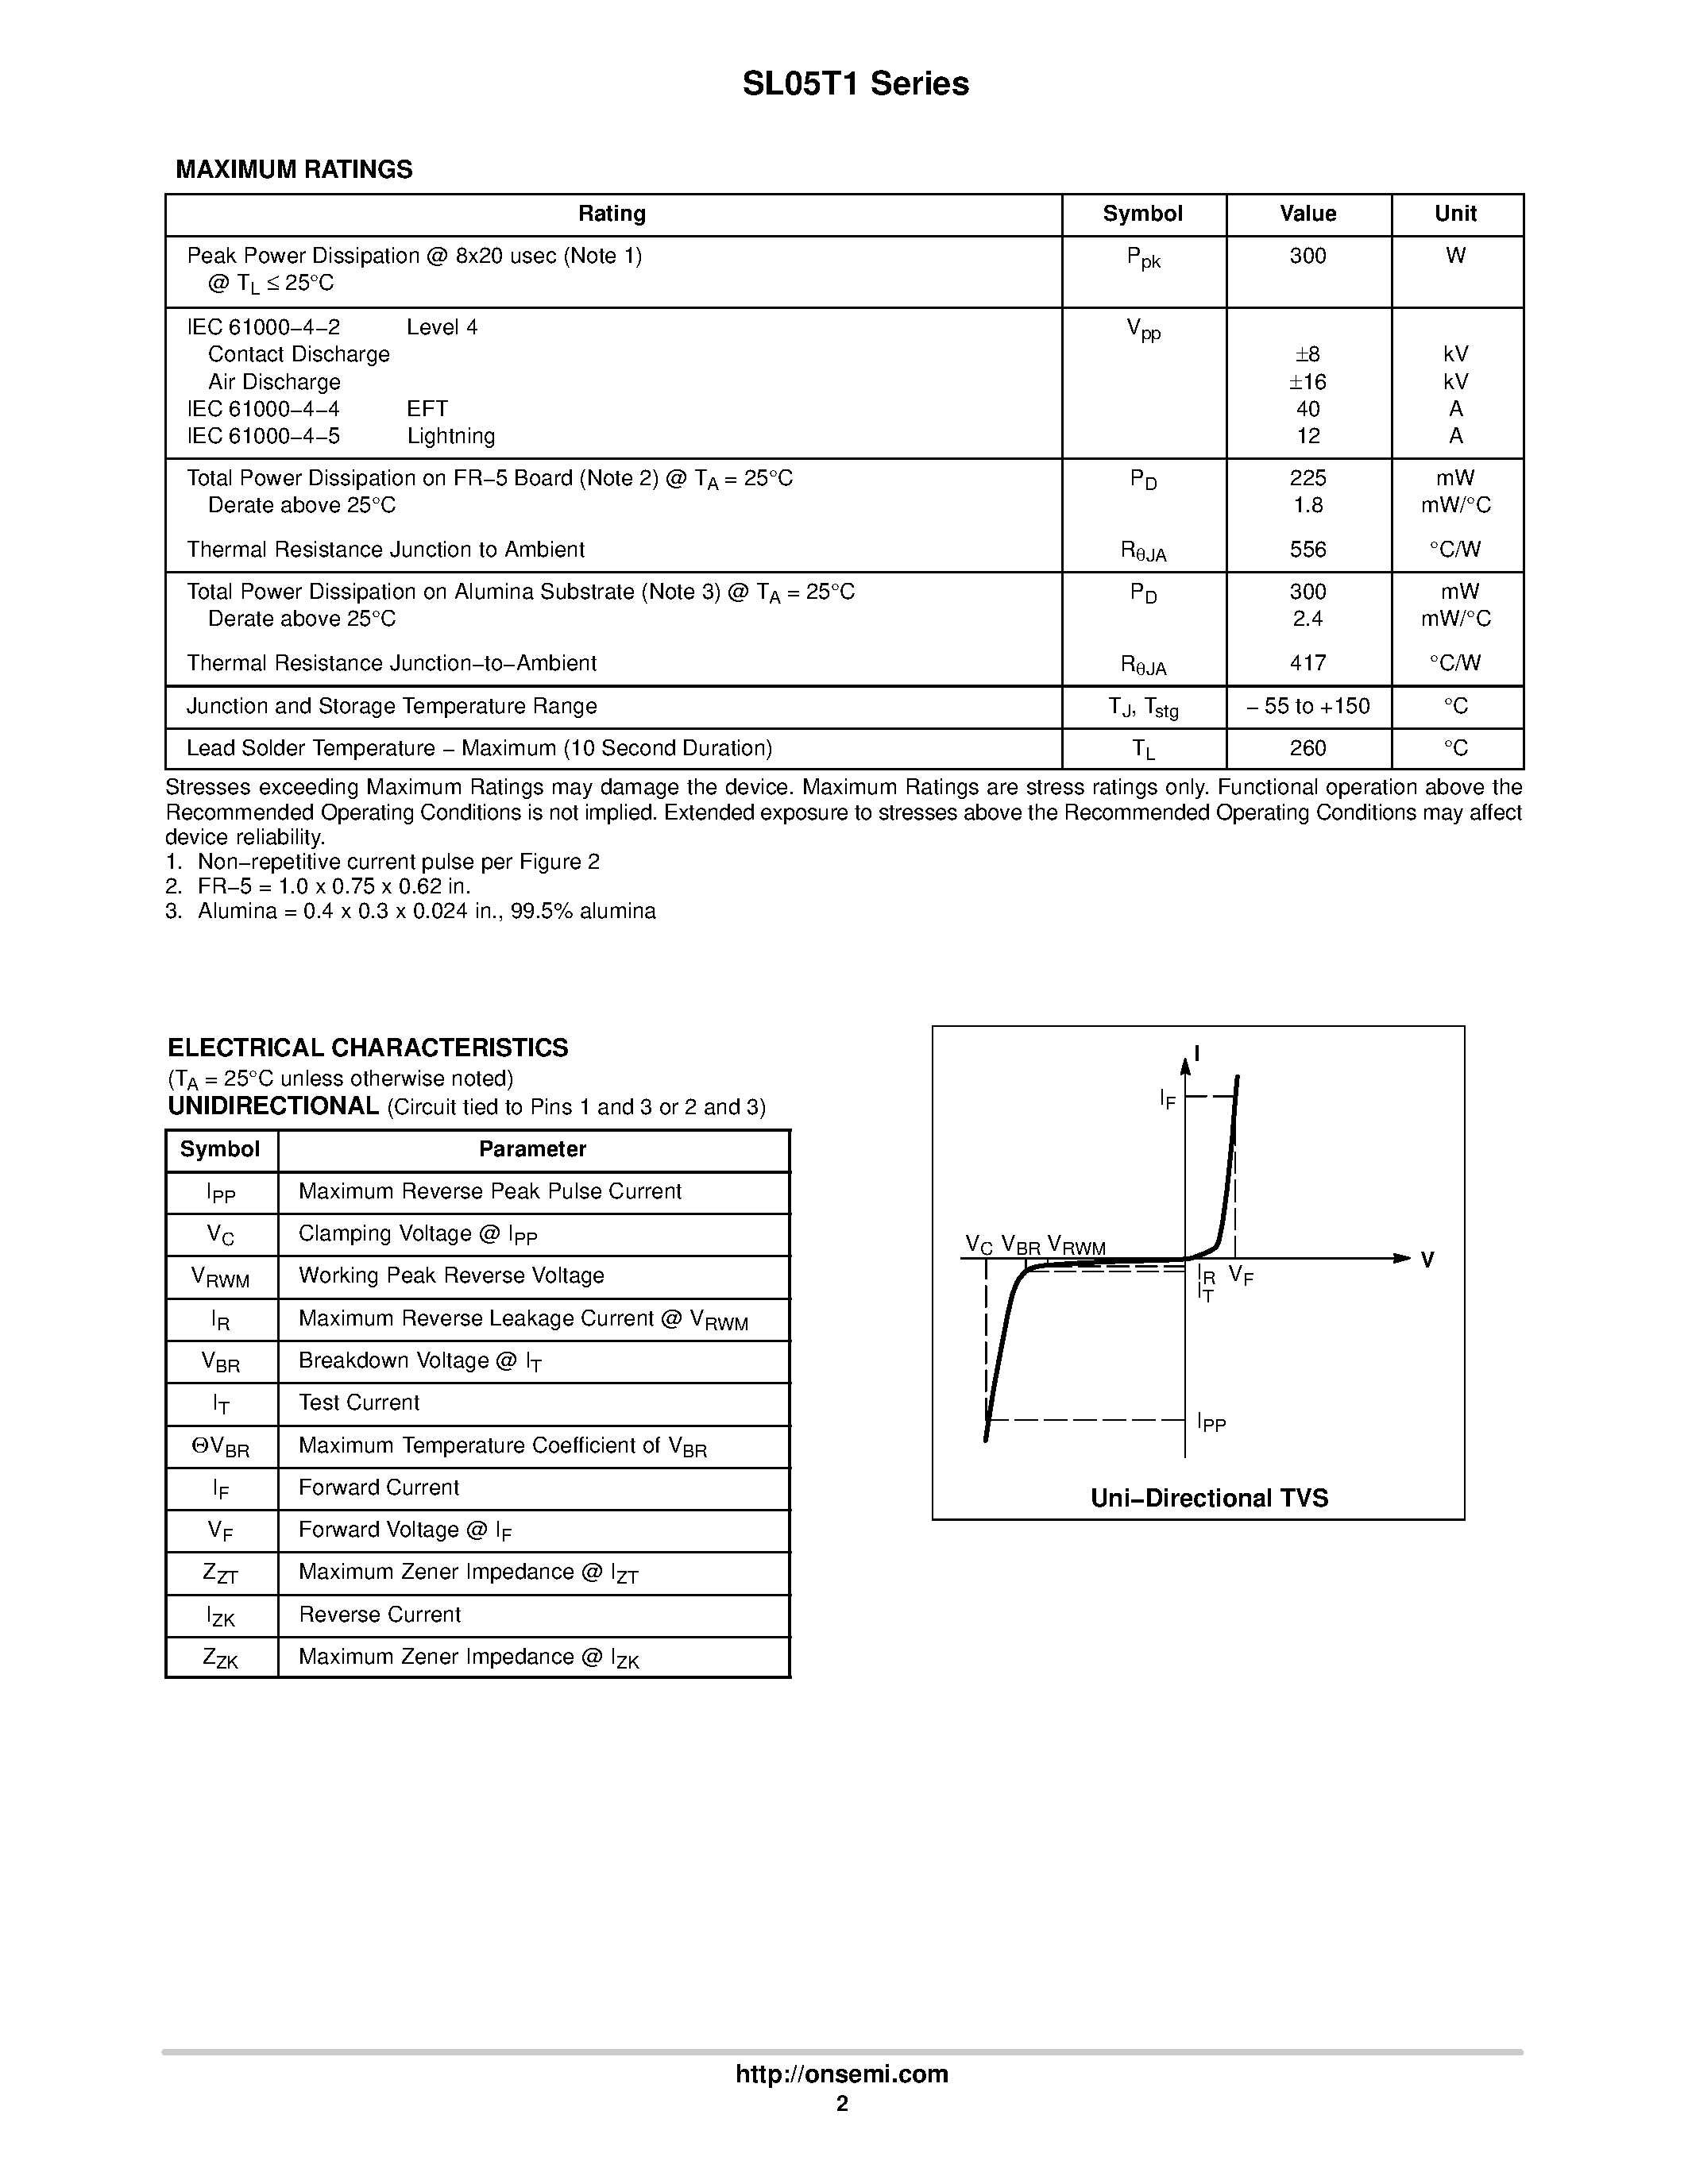 Datasheet SL24T1 - SOT-23 Low Capacitance TVS page 2